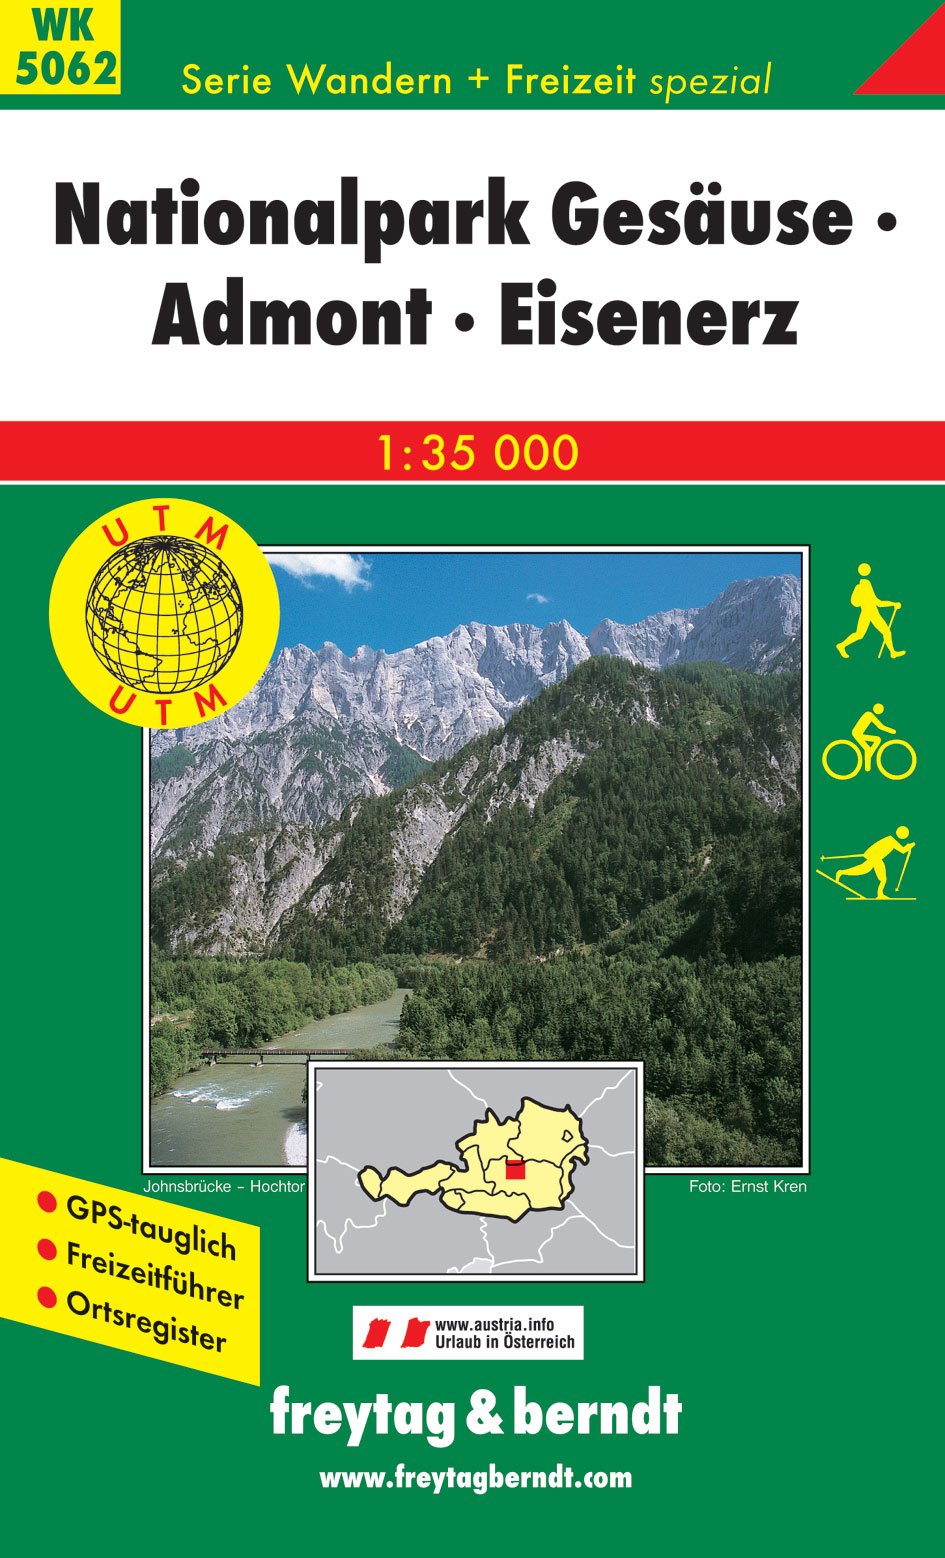 Carte de randonnée - Gesäuse nationalpark Admont Eisenerz (Alpes autrichiennes), n° WK5062 | Freytag & Berndt carte pliée Freytag & Berndt 